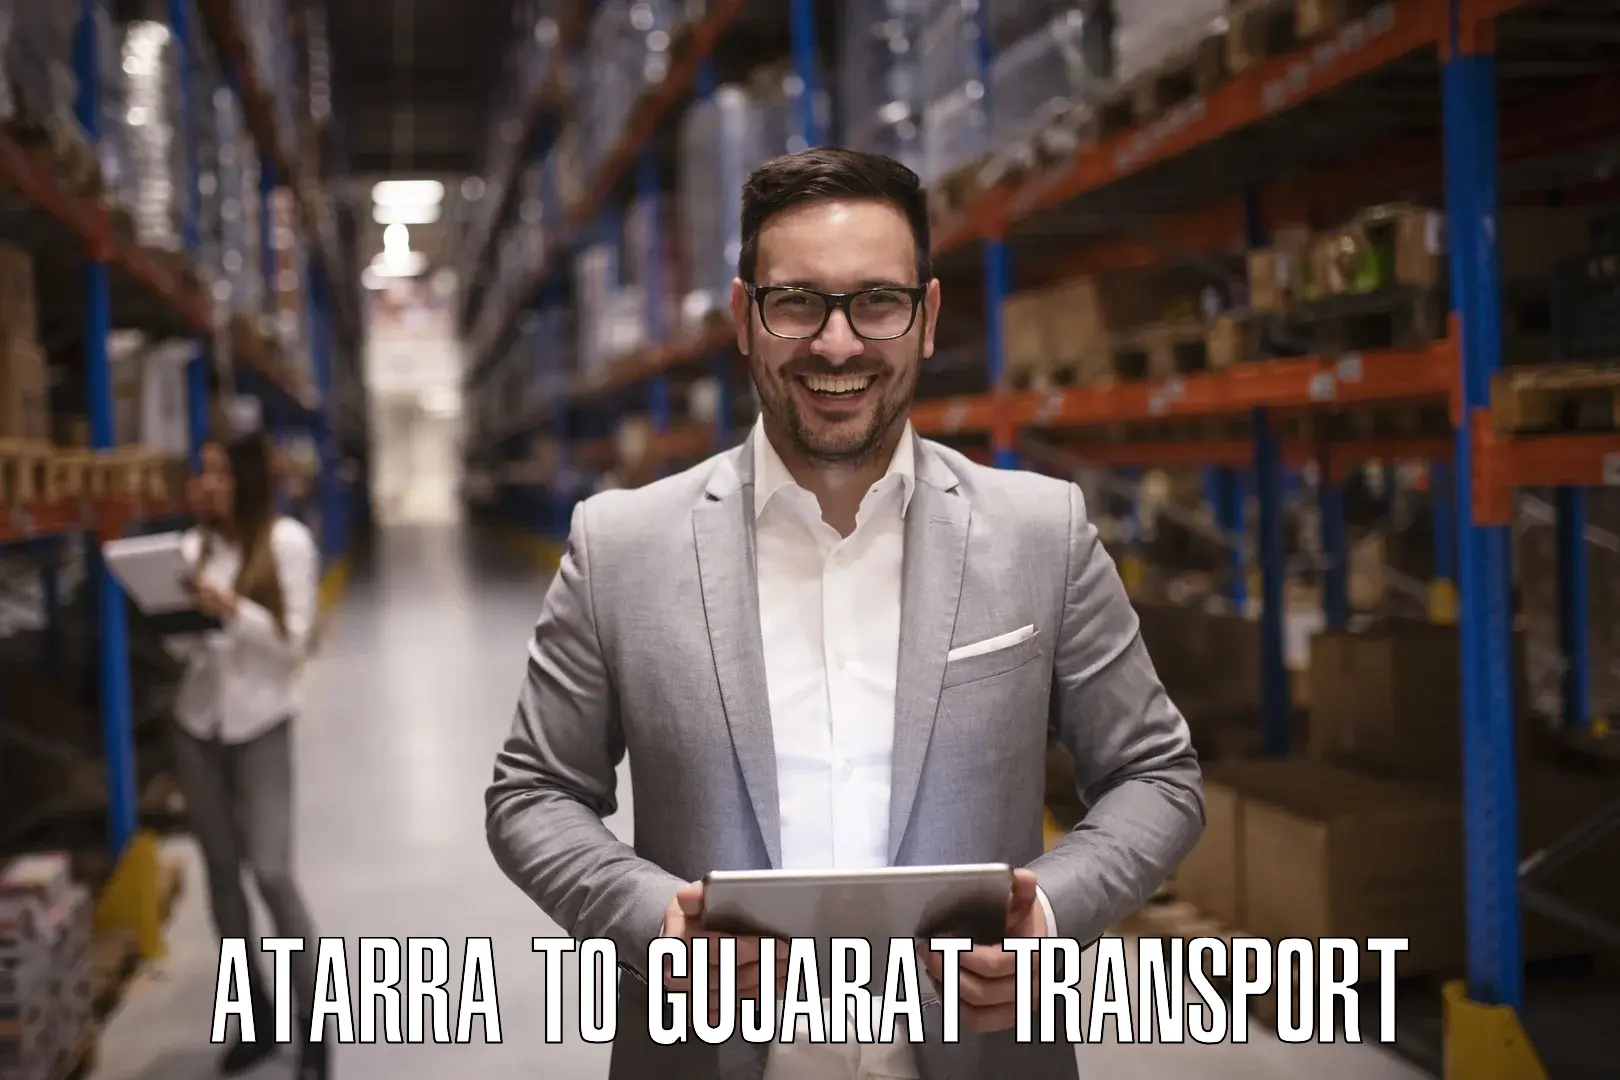 Nearest transport service Atarra to Surat